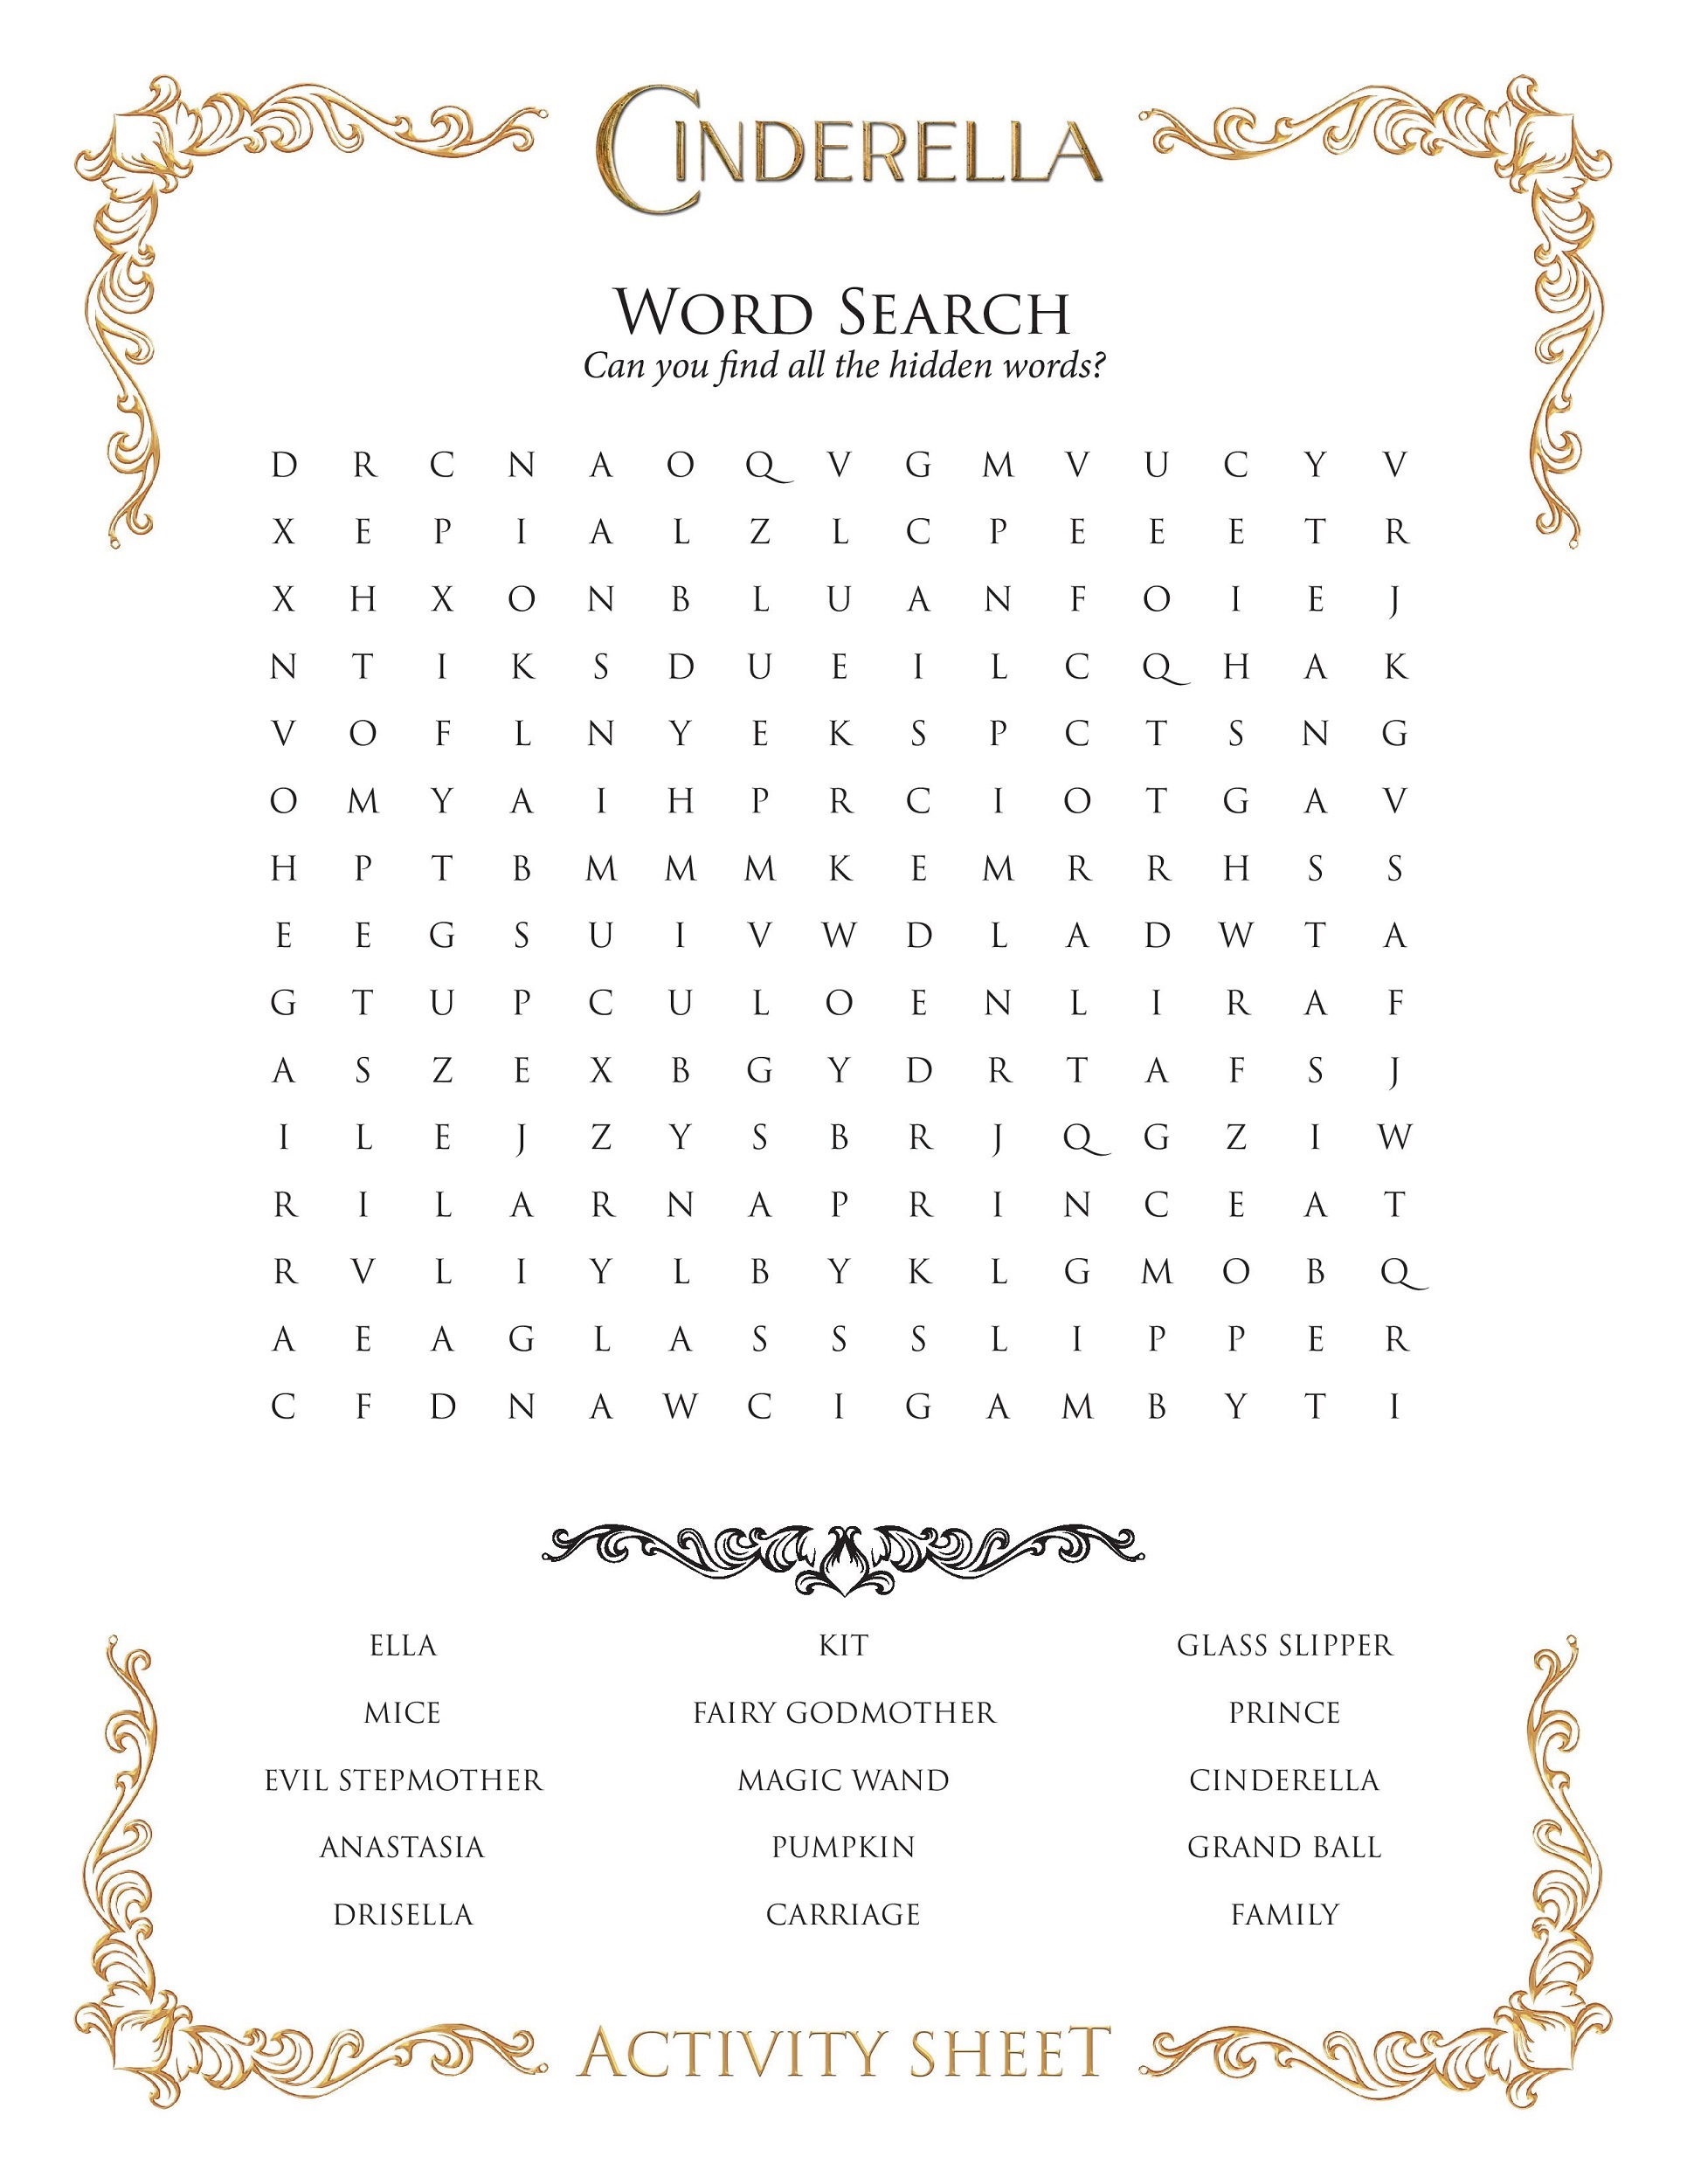 disney-word-search-puzzles-cinderella